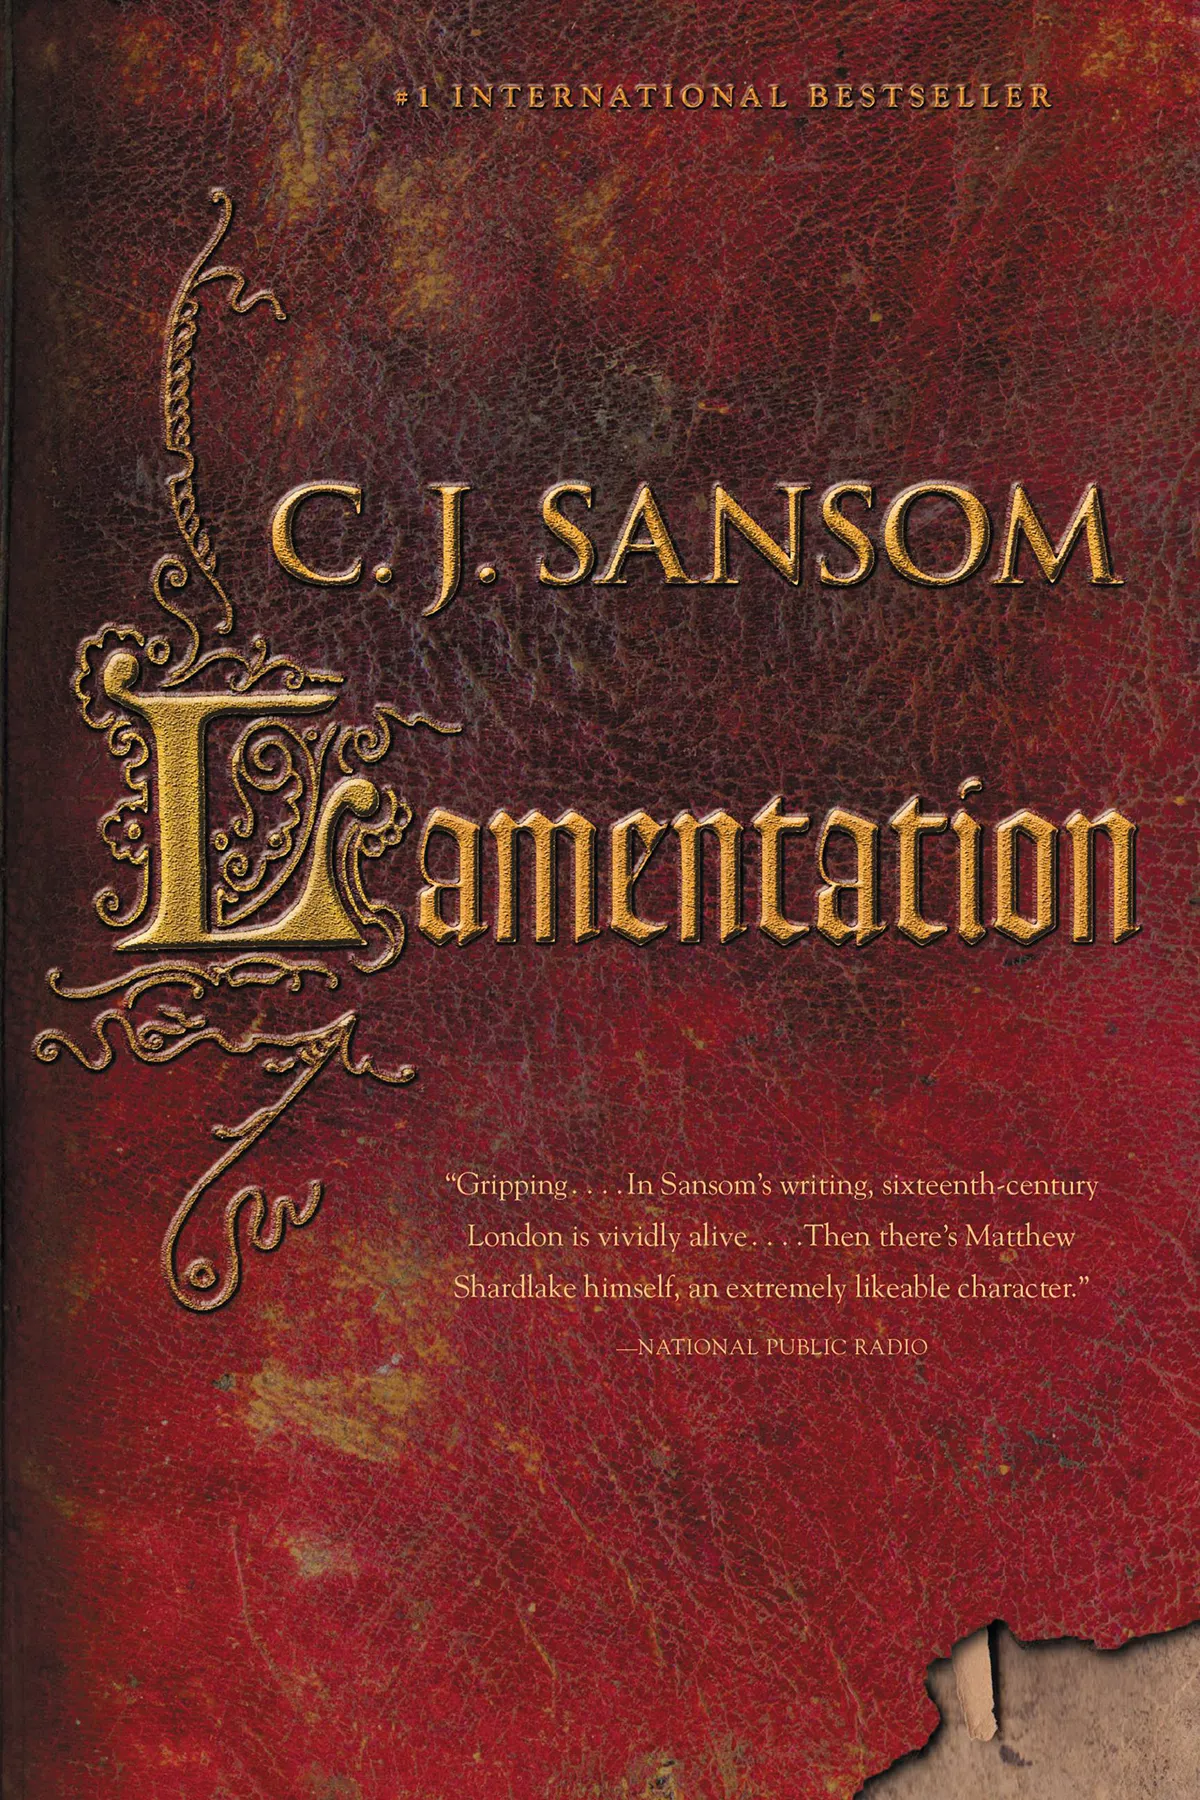 Lamentation (The Shardlake #6)